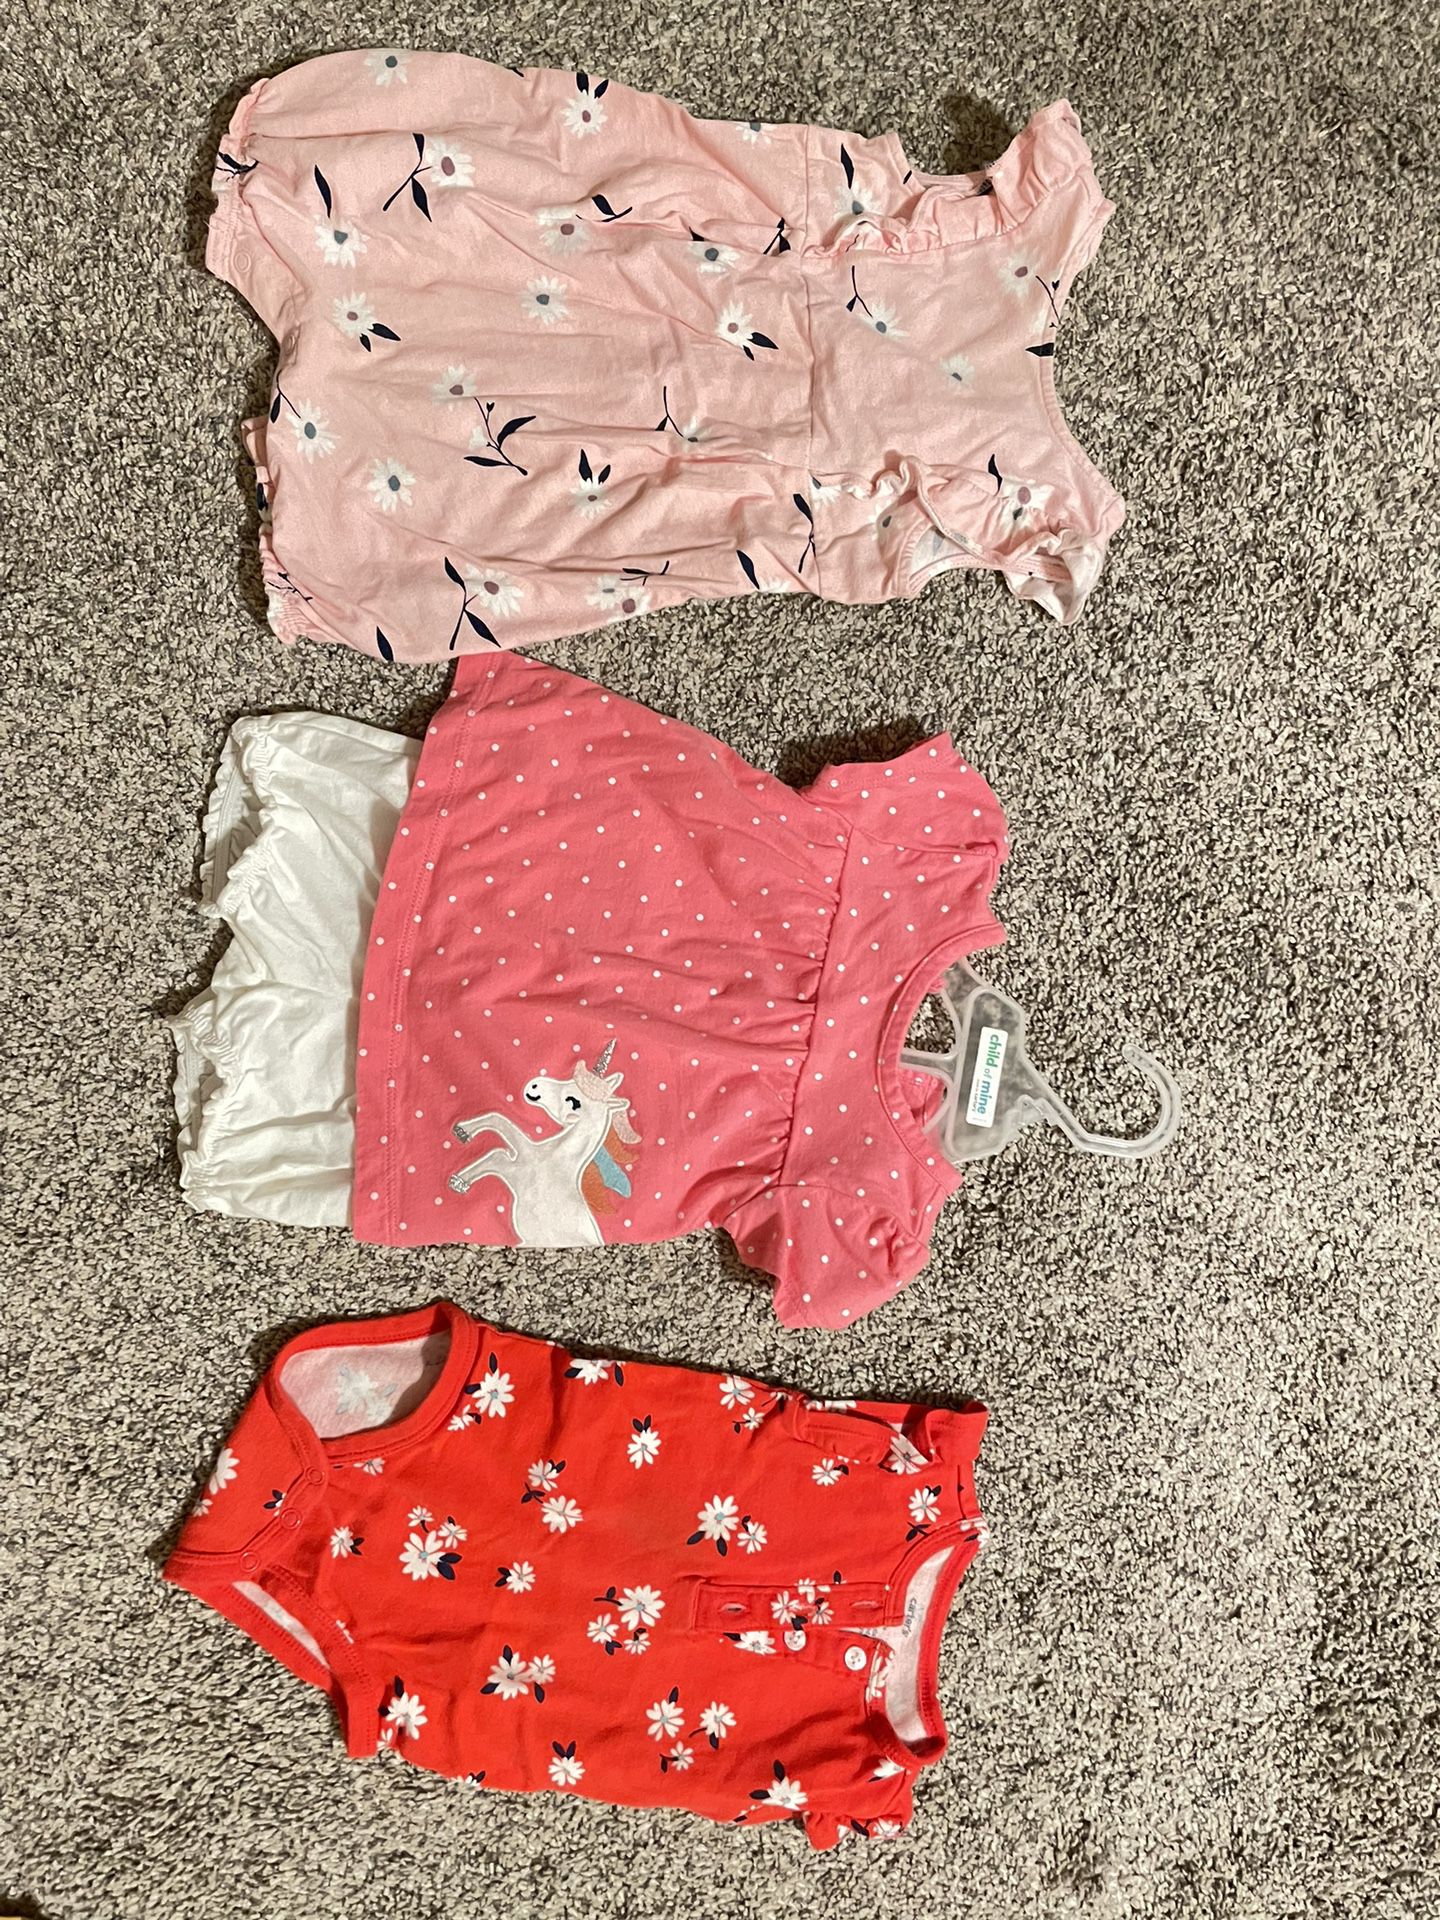 9mo Baby Girl Clothes 